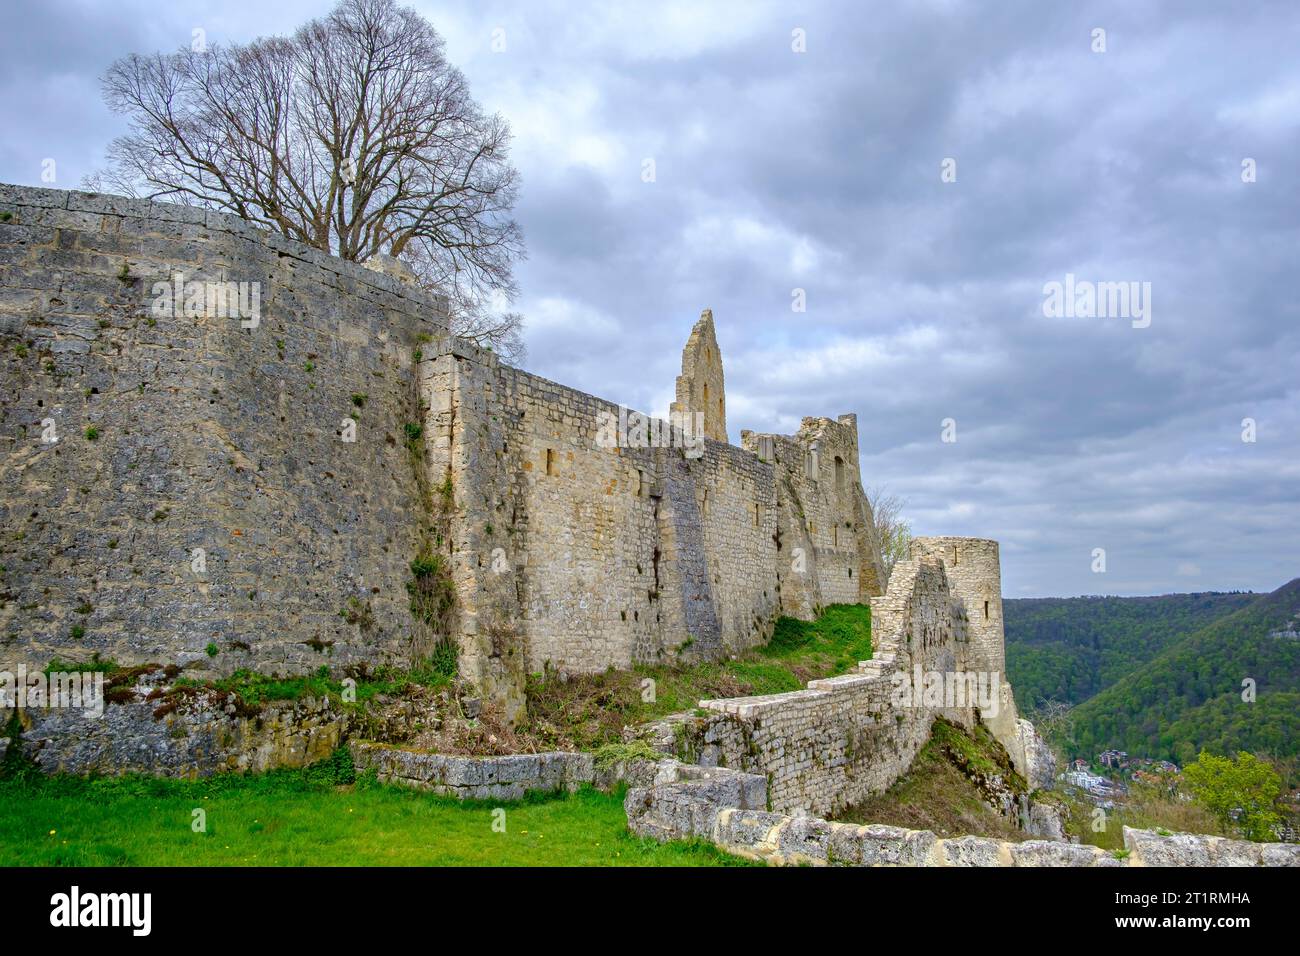 Ruine der mittelalterlichen Burg Hohenurach, Bad Urach, Schwäbische Alb, Baden-Württemberg, Deutschland. Stockfoto